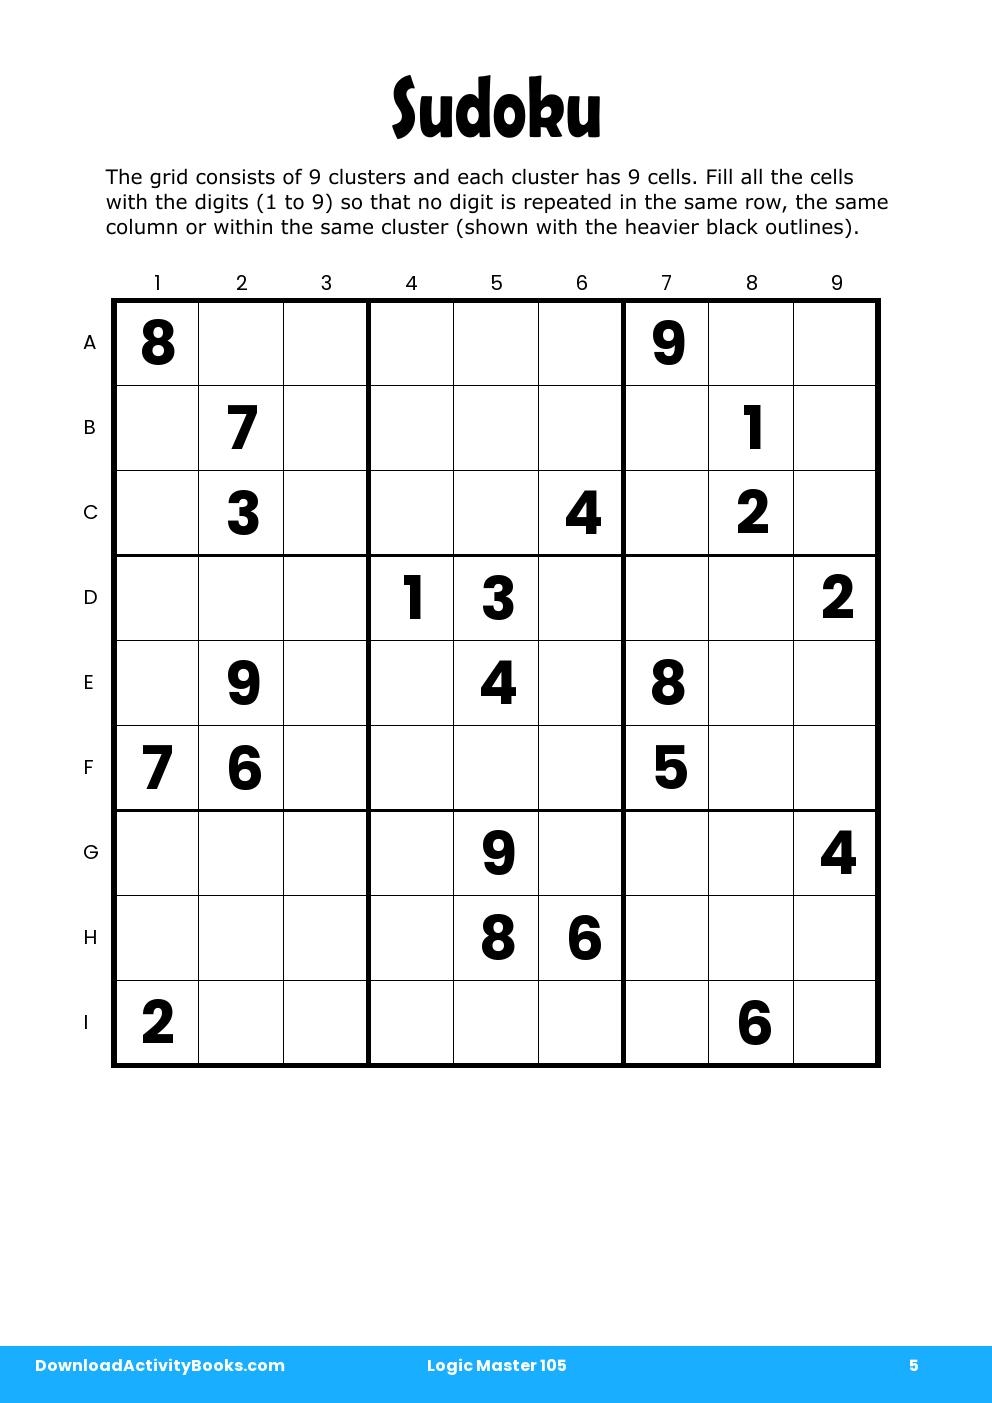 Sudoku in Logic Master 105